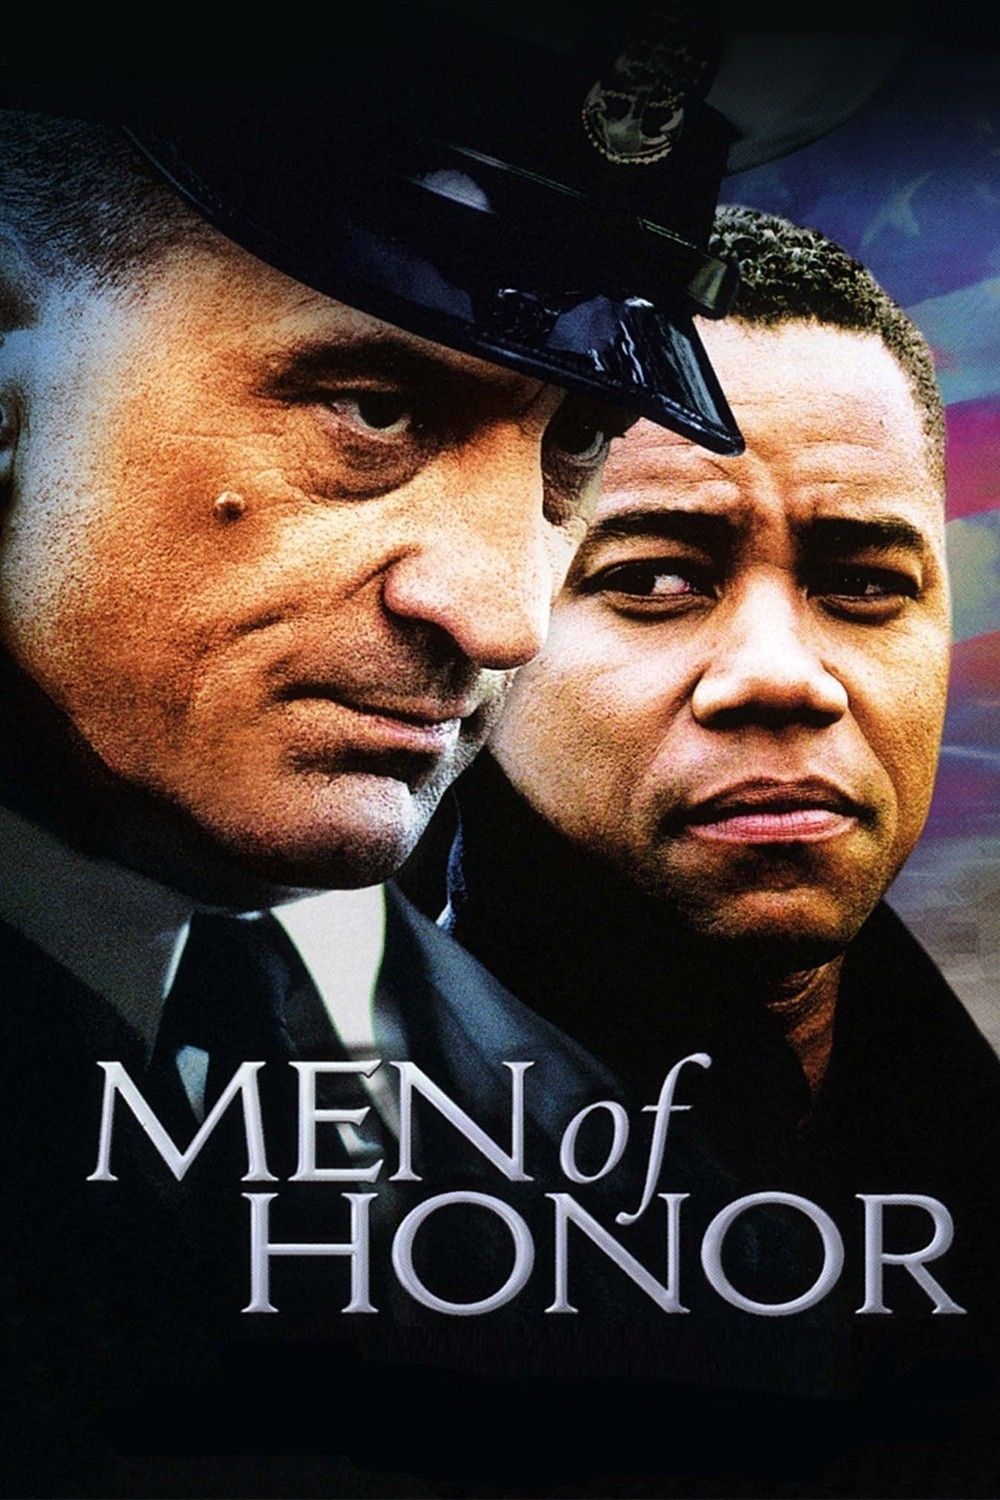 MEN OF HONOR (2000）邦題：ザ・ダイバー